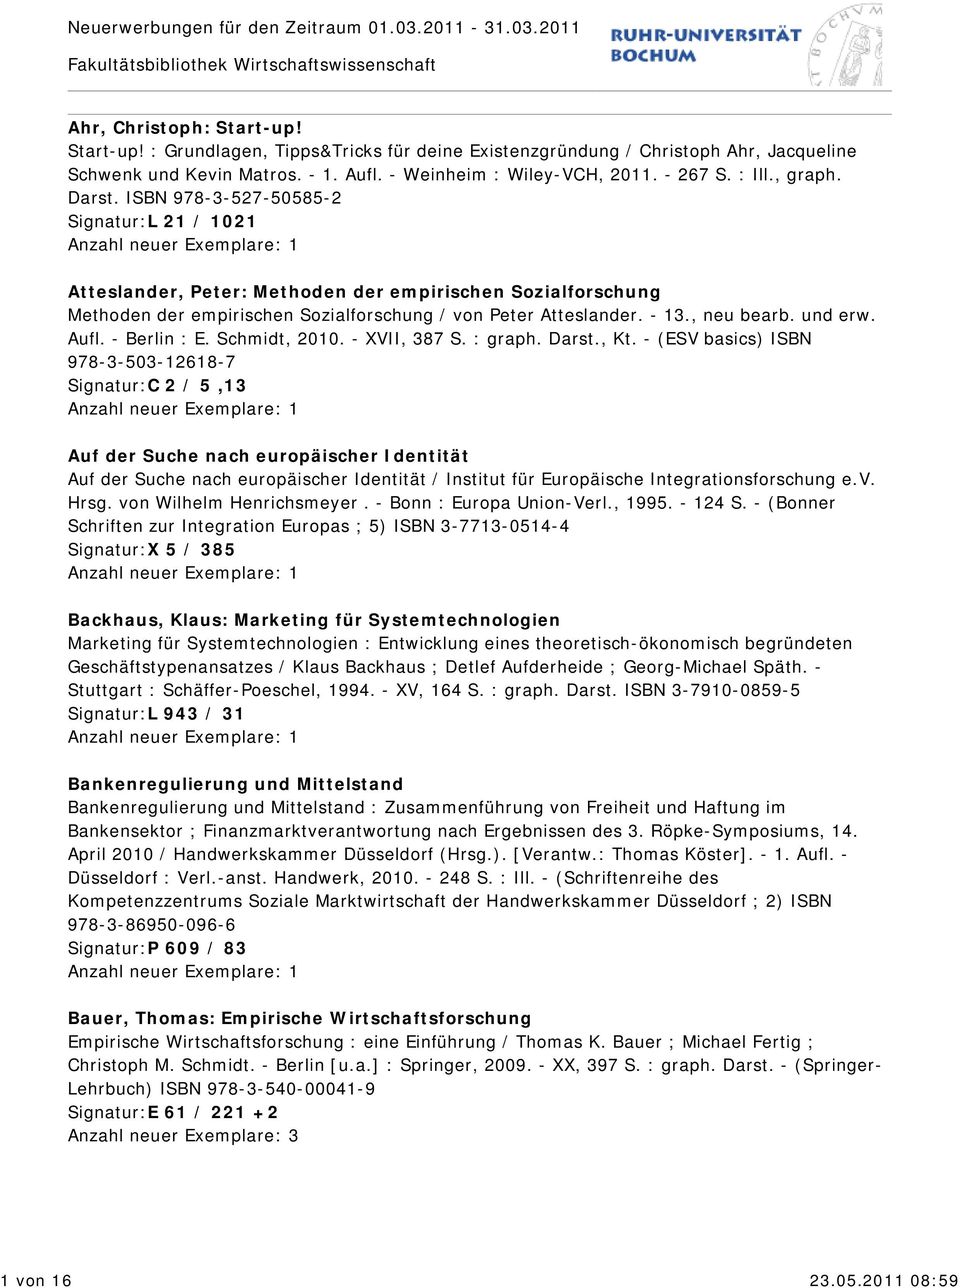 ISBN 978-3-527-50585-2 Signatur:L 21 / 1021 Atteslander, Peter: Methoden der empirischen Sozialforschung Methoden der empirischen Sozialforschung / von Peter Atteslander. - 13., neu bearb. und erw.